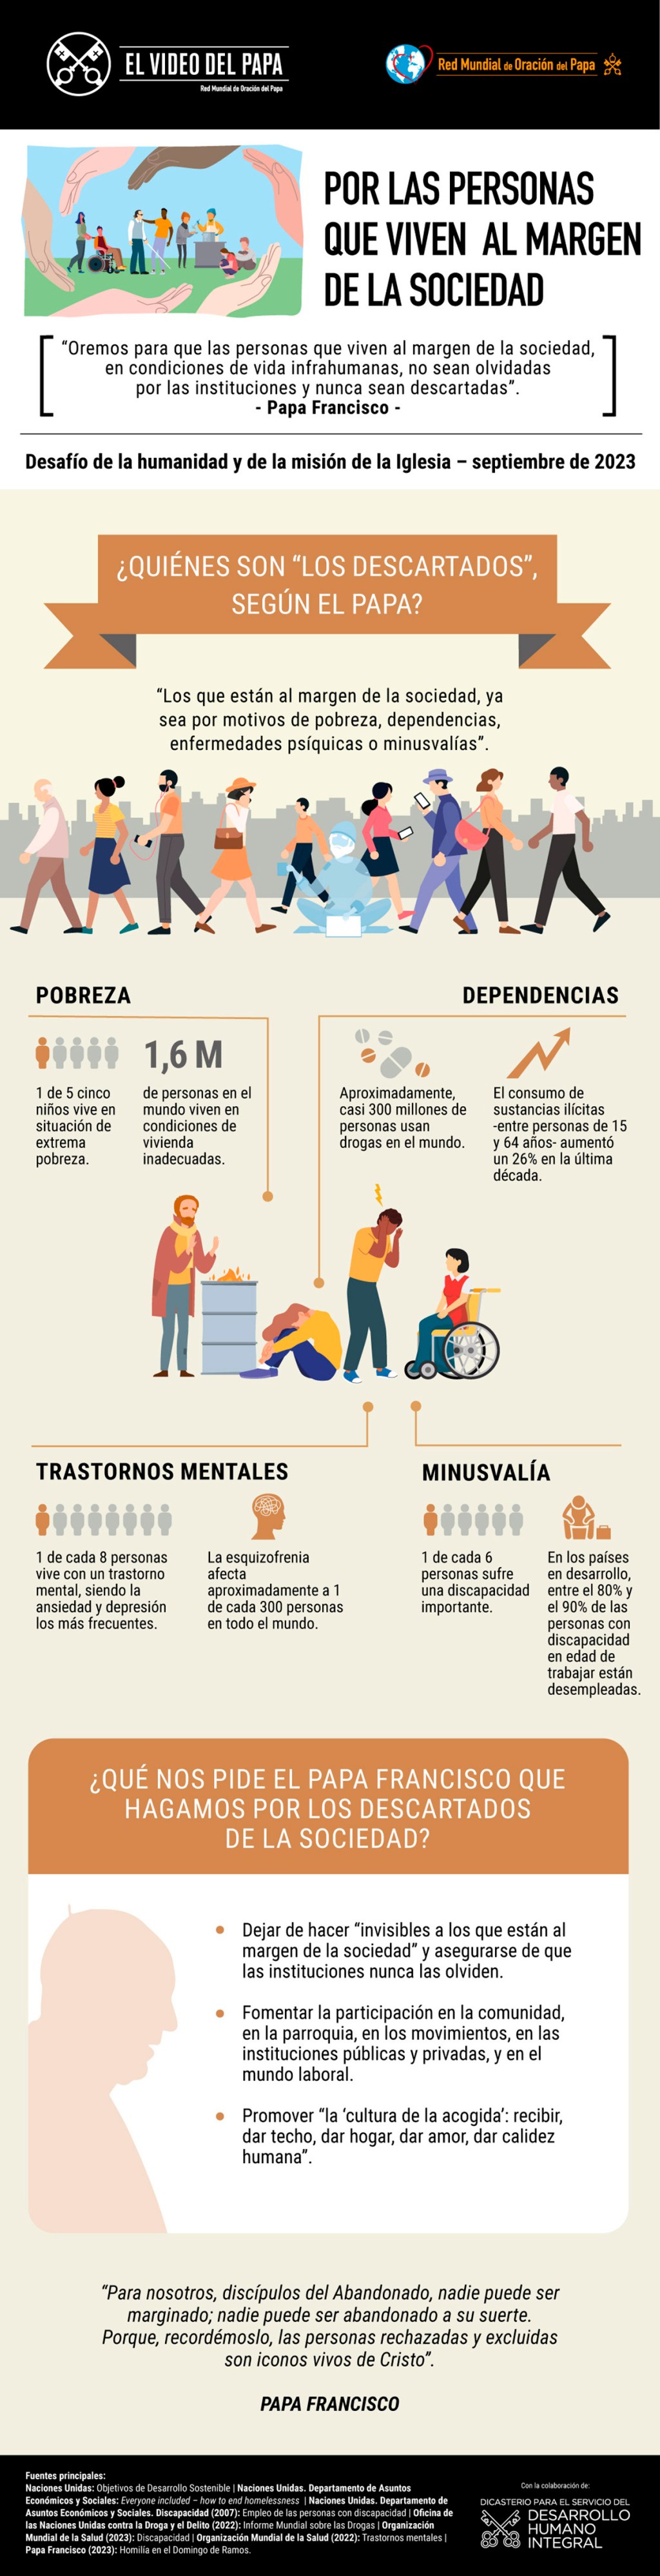 Infographic-TPV-9-2023-ES-Por-las-personas-que-viven-al-margen.jpg